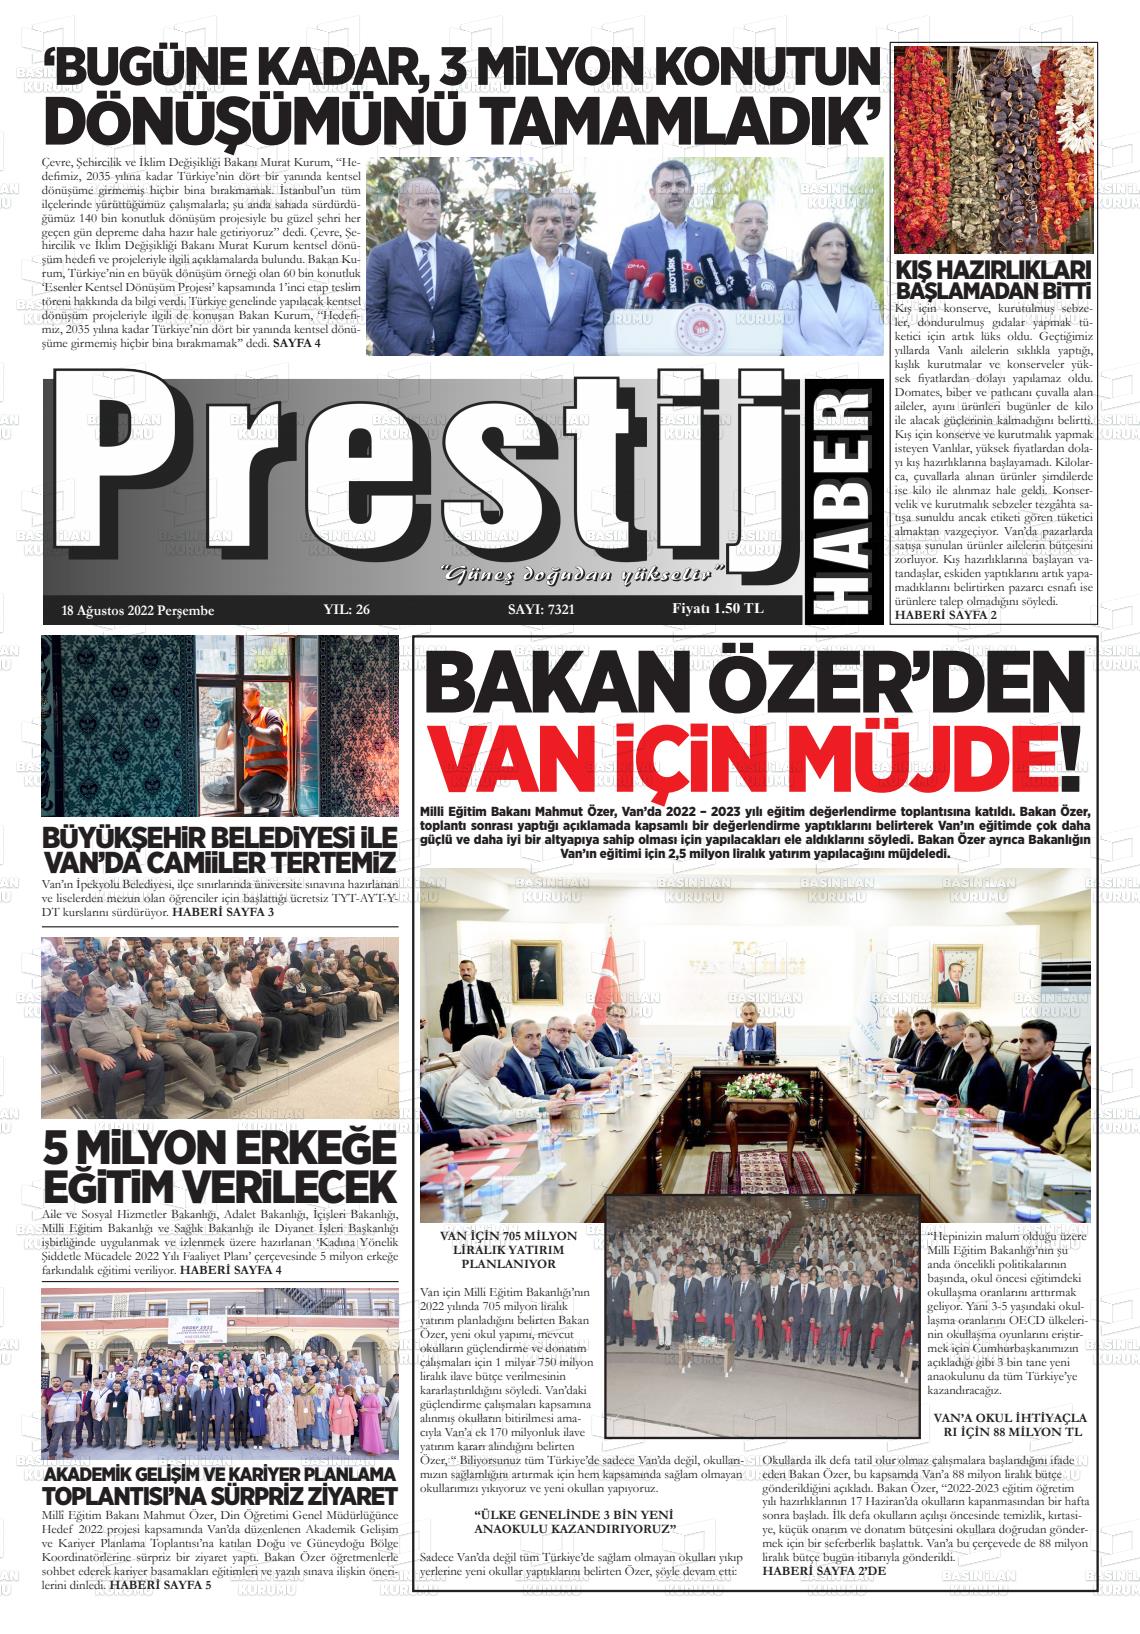 18 Ağustos 2022 Van Prestij Gazete Manşeti